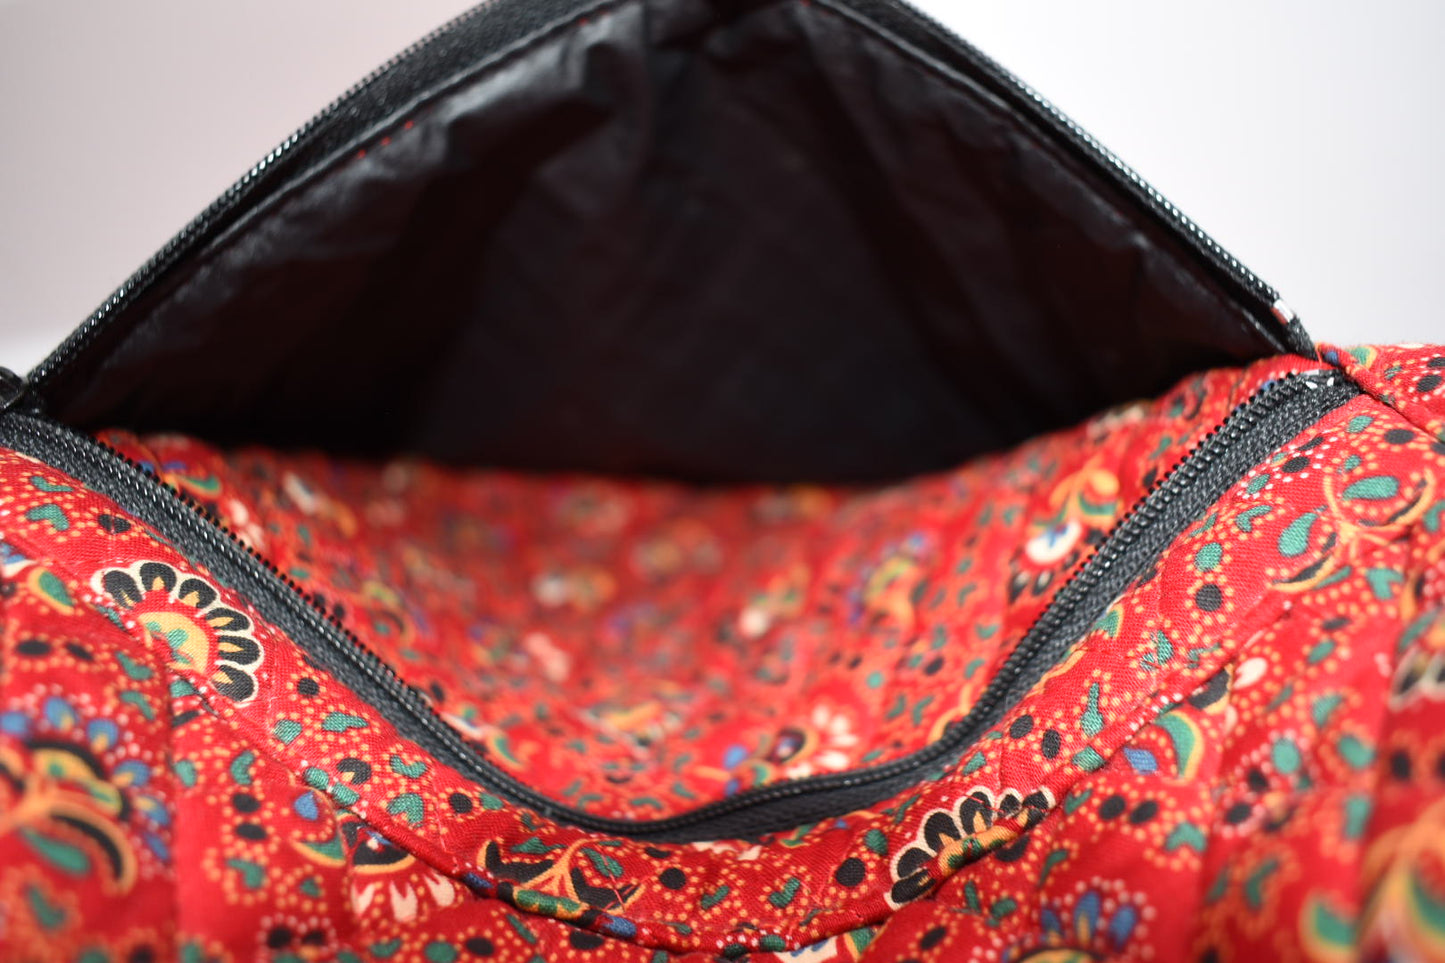 Vintage Vera Bradley Large Sling Bag in "Colette Red - 1995" Pattern